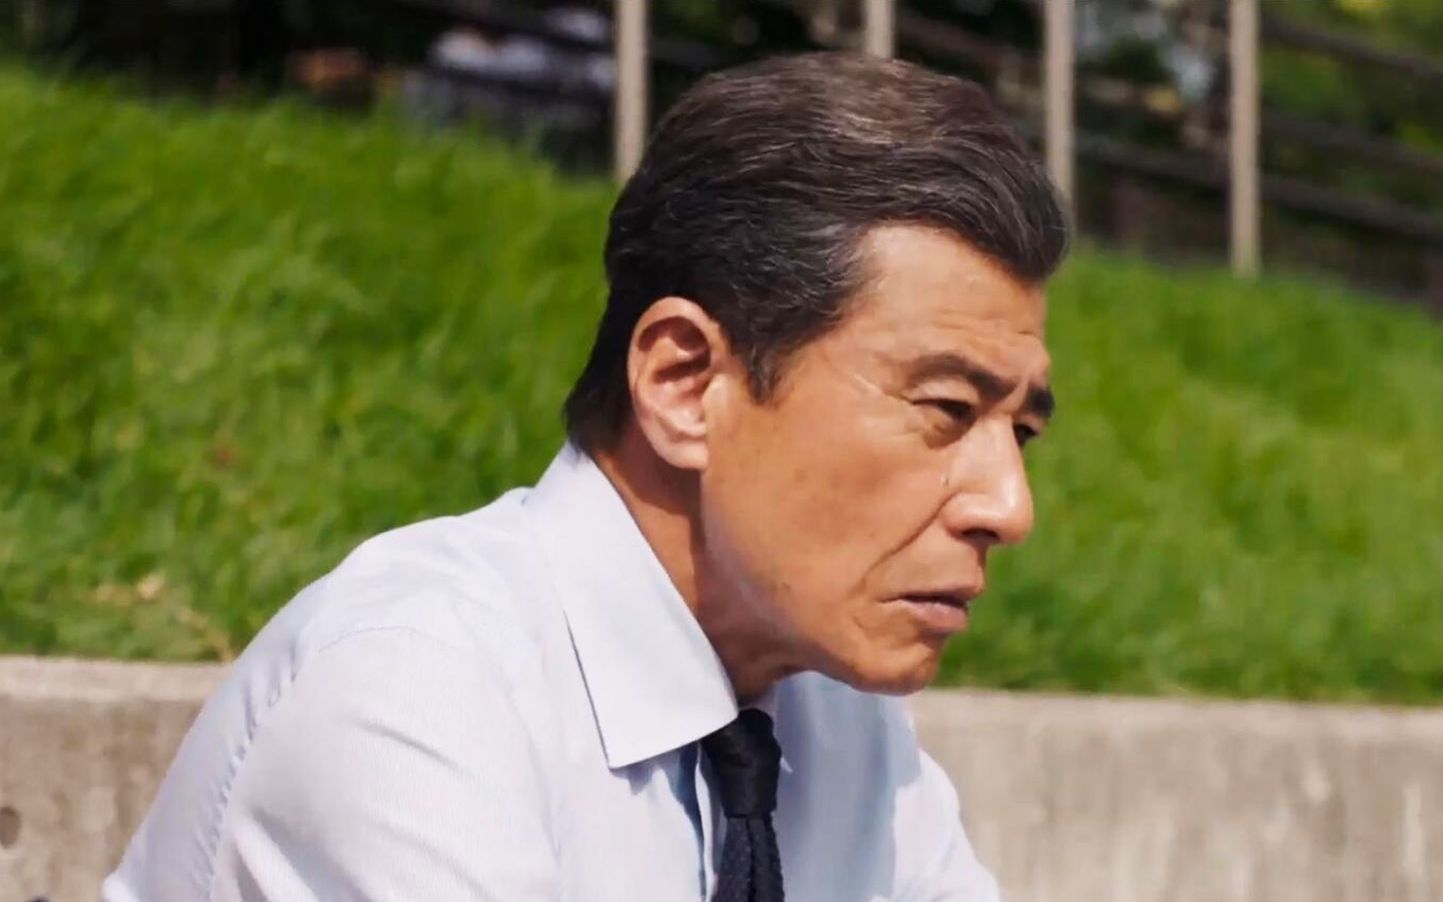 老年人也有“职场焦虑”…日本老龄化背景下的生活片《无用之人》